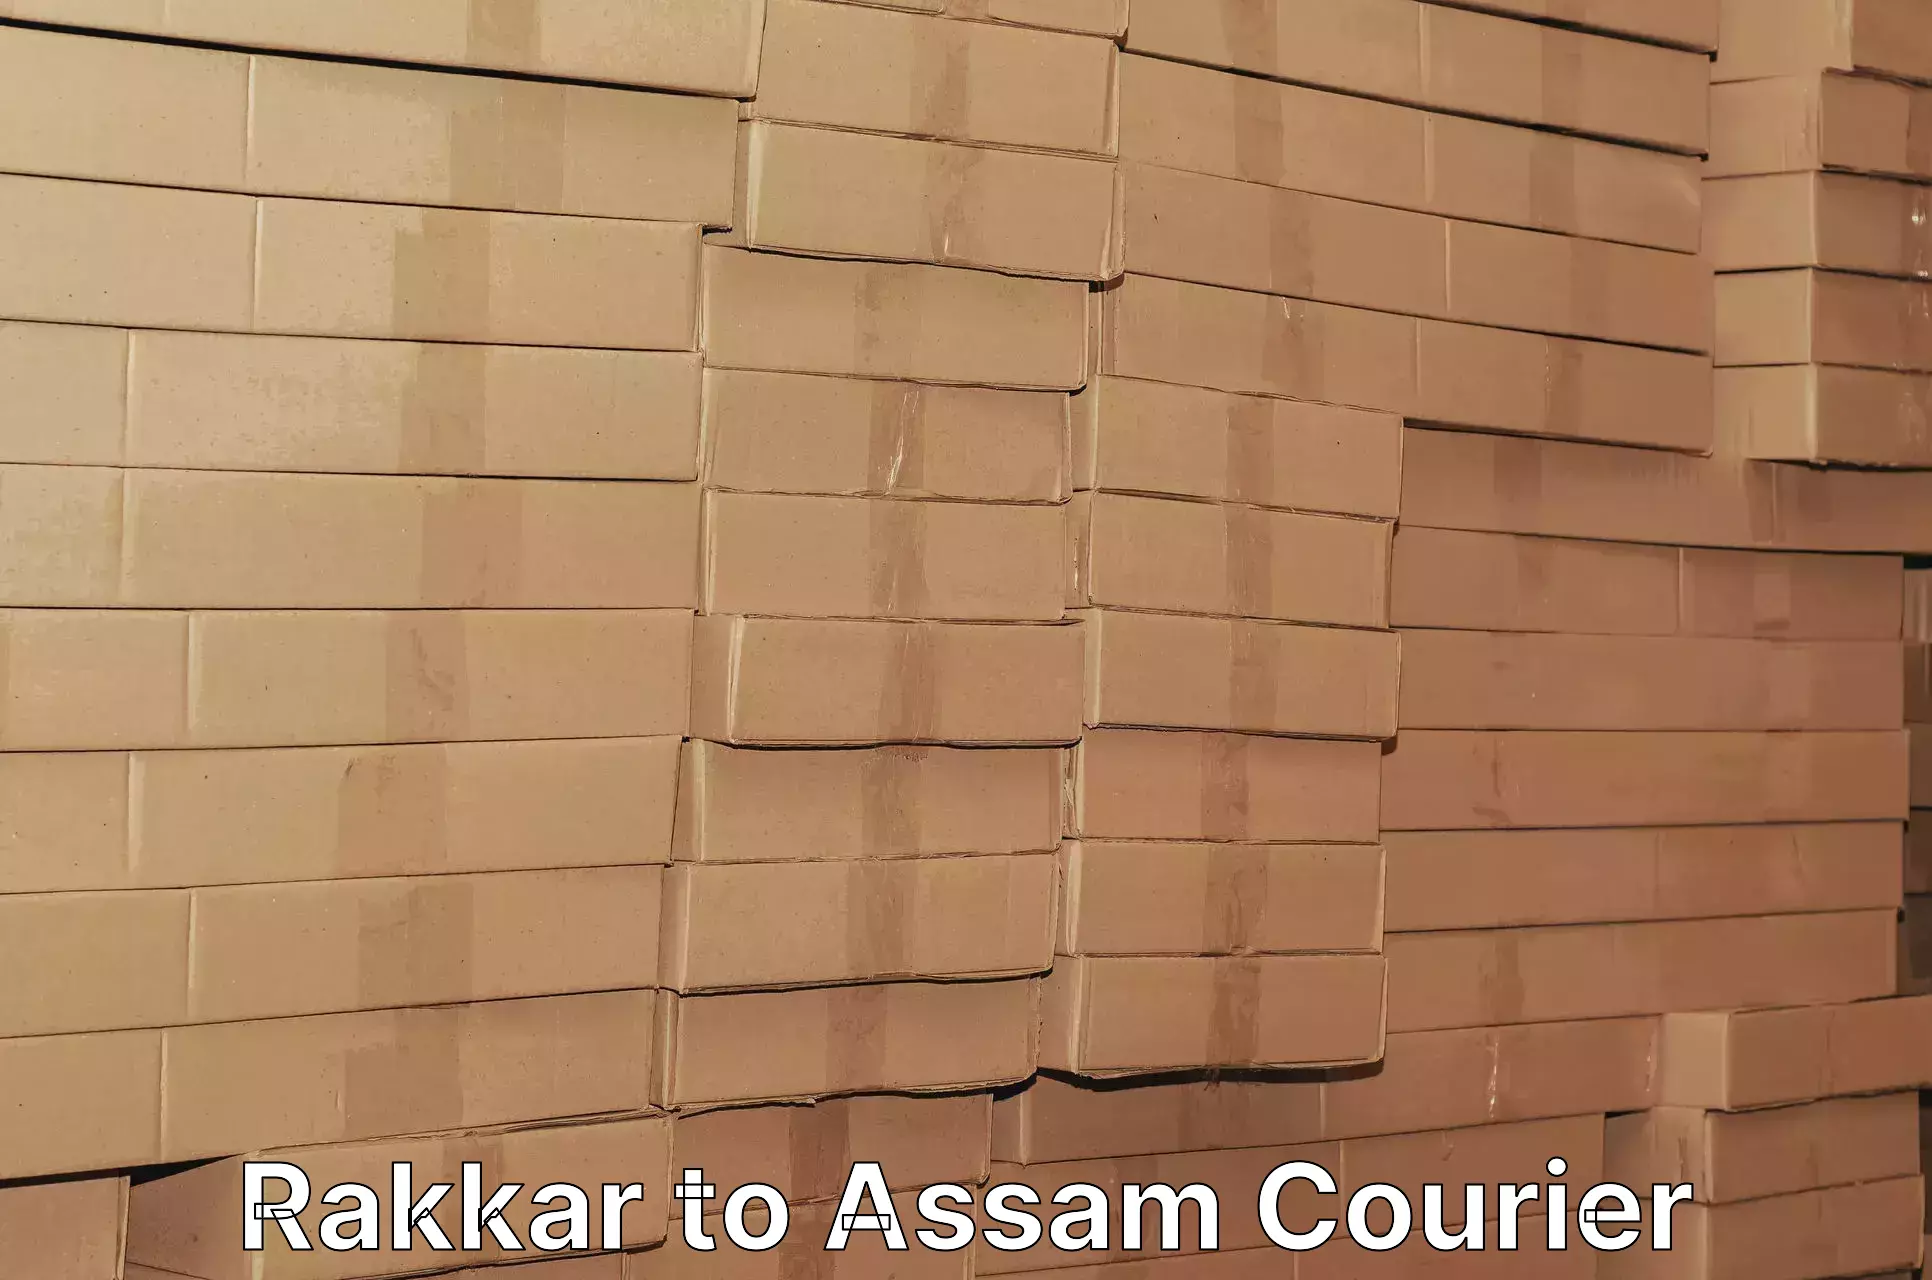 Residential courier service Rakkar to Assam